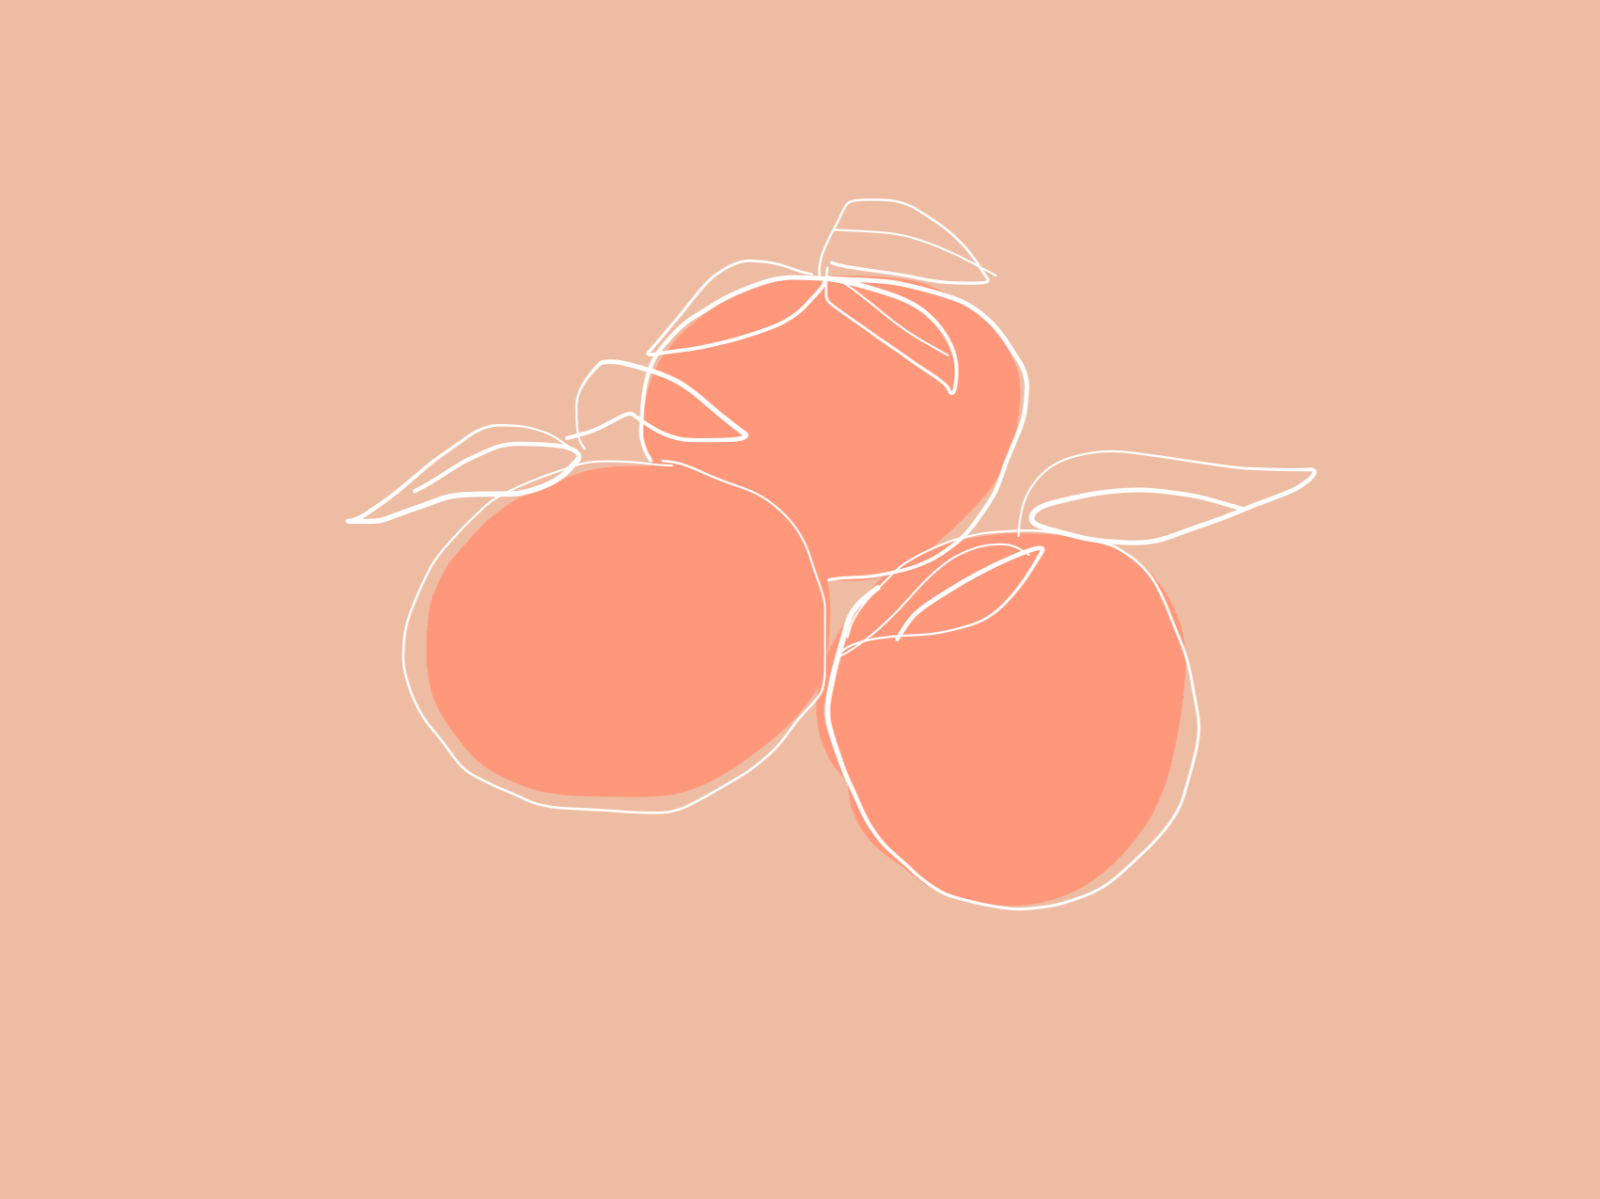 2D Peaches Illustration. Peach wallpaper, Peach aesthetic